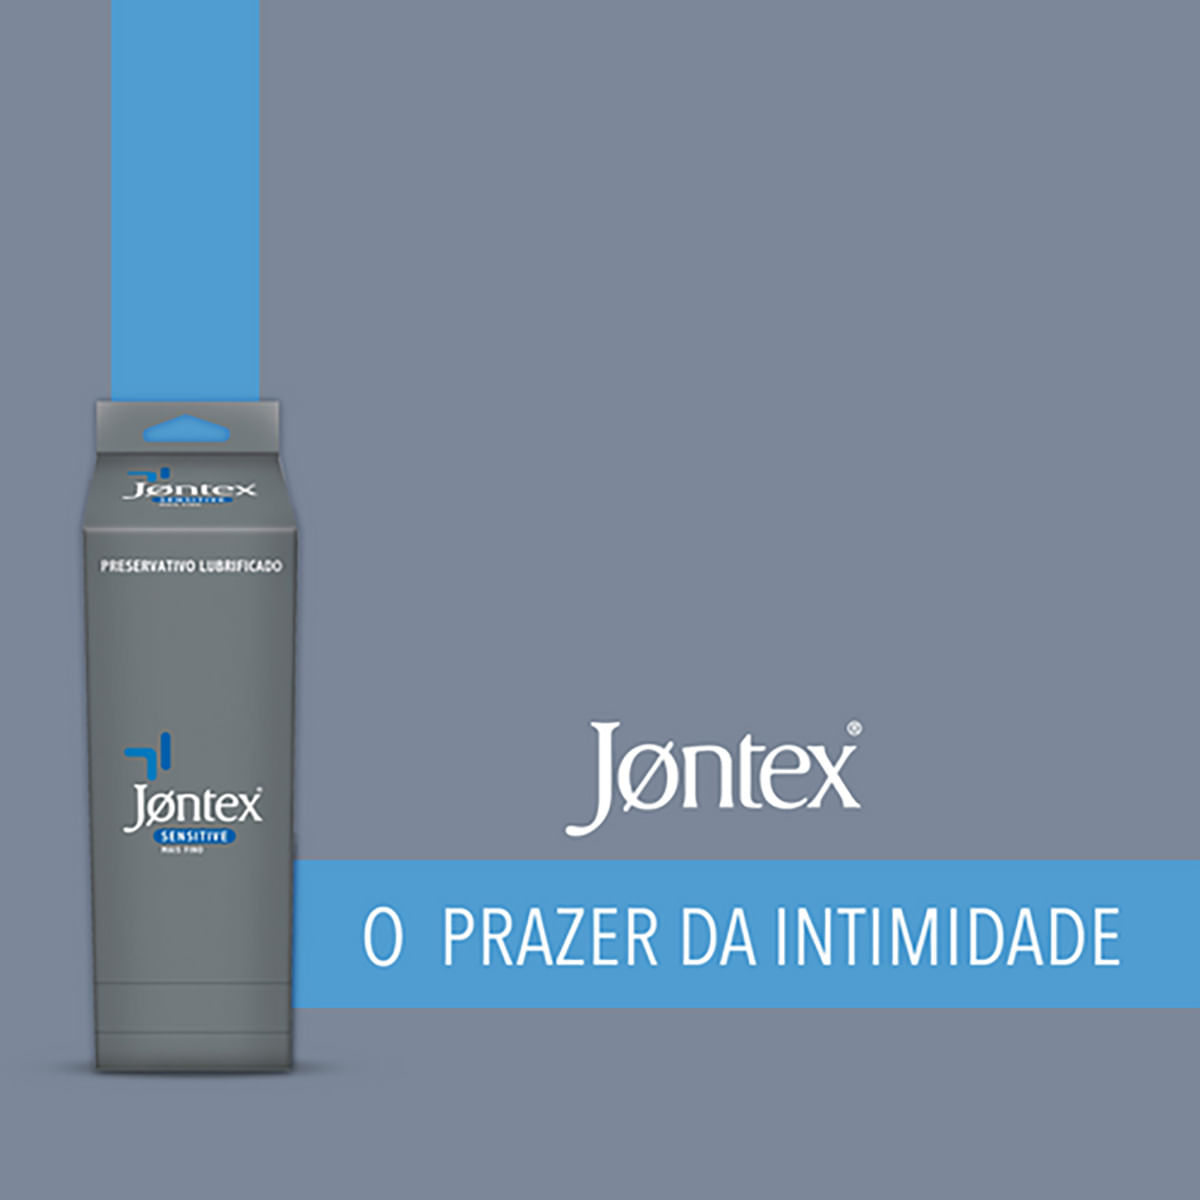 Preservativos Lubrificados Sensitive Mais Fino Kit com 36 unidades Jontex